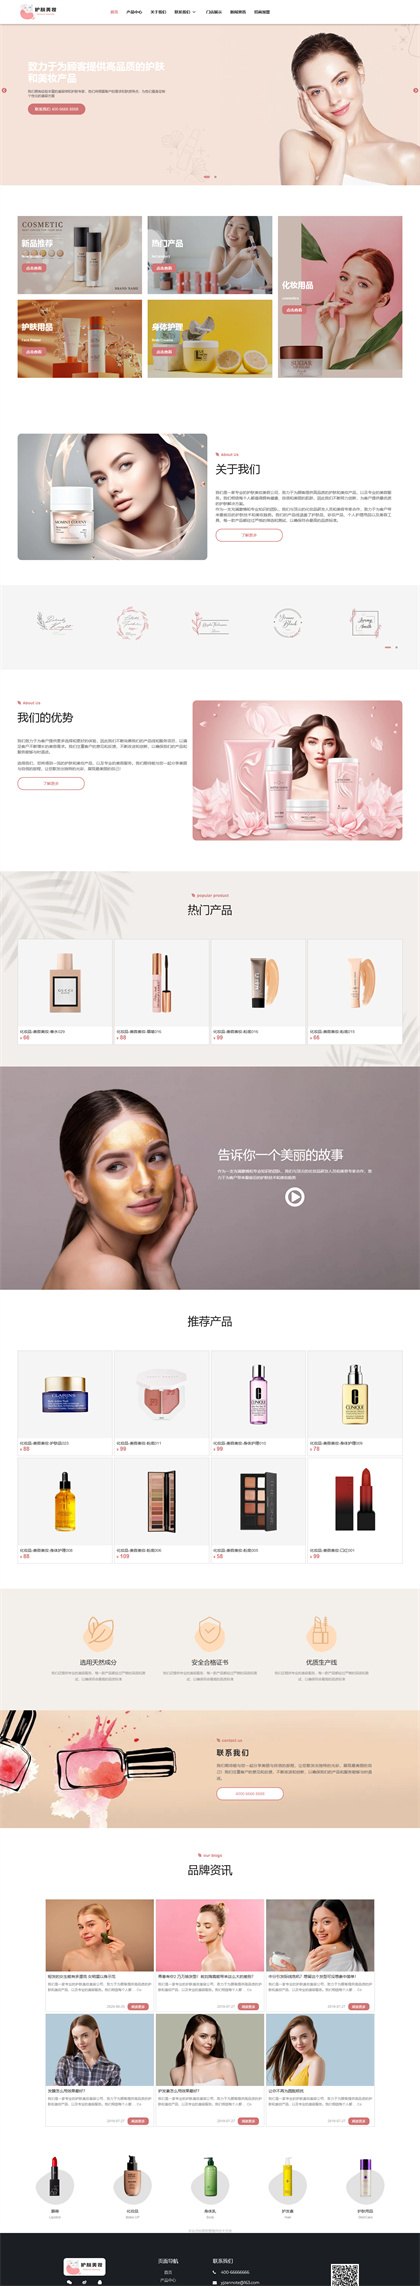 美容护肤-化妆品-护肤品-美妆公司-网站模板-网站模板网站模板预览图片